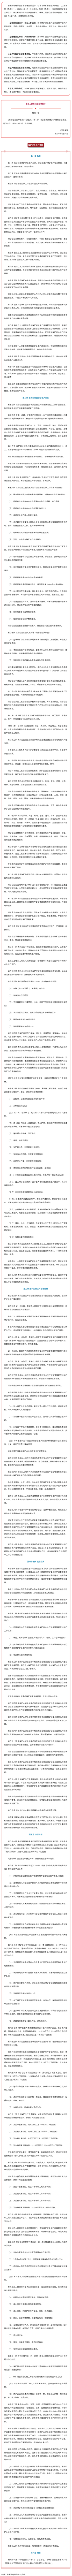 普法宣传 _ 李强签署国务院令 公布《煤矿安全生产条例》.png